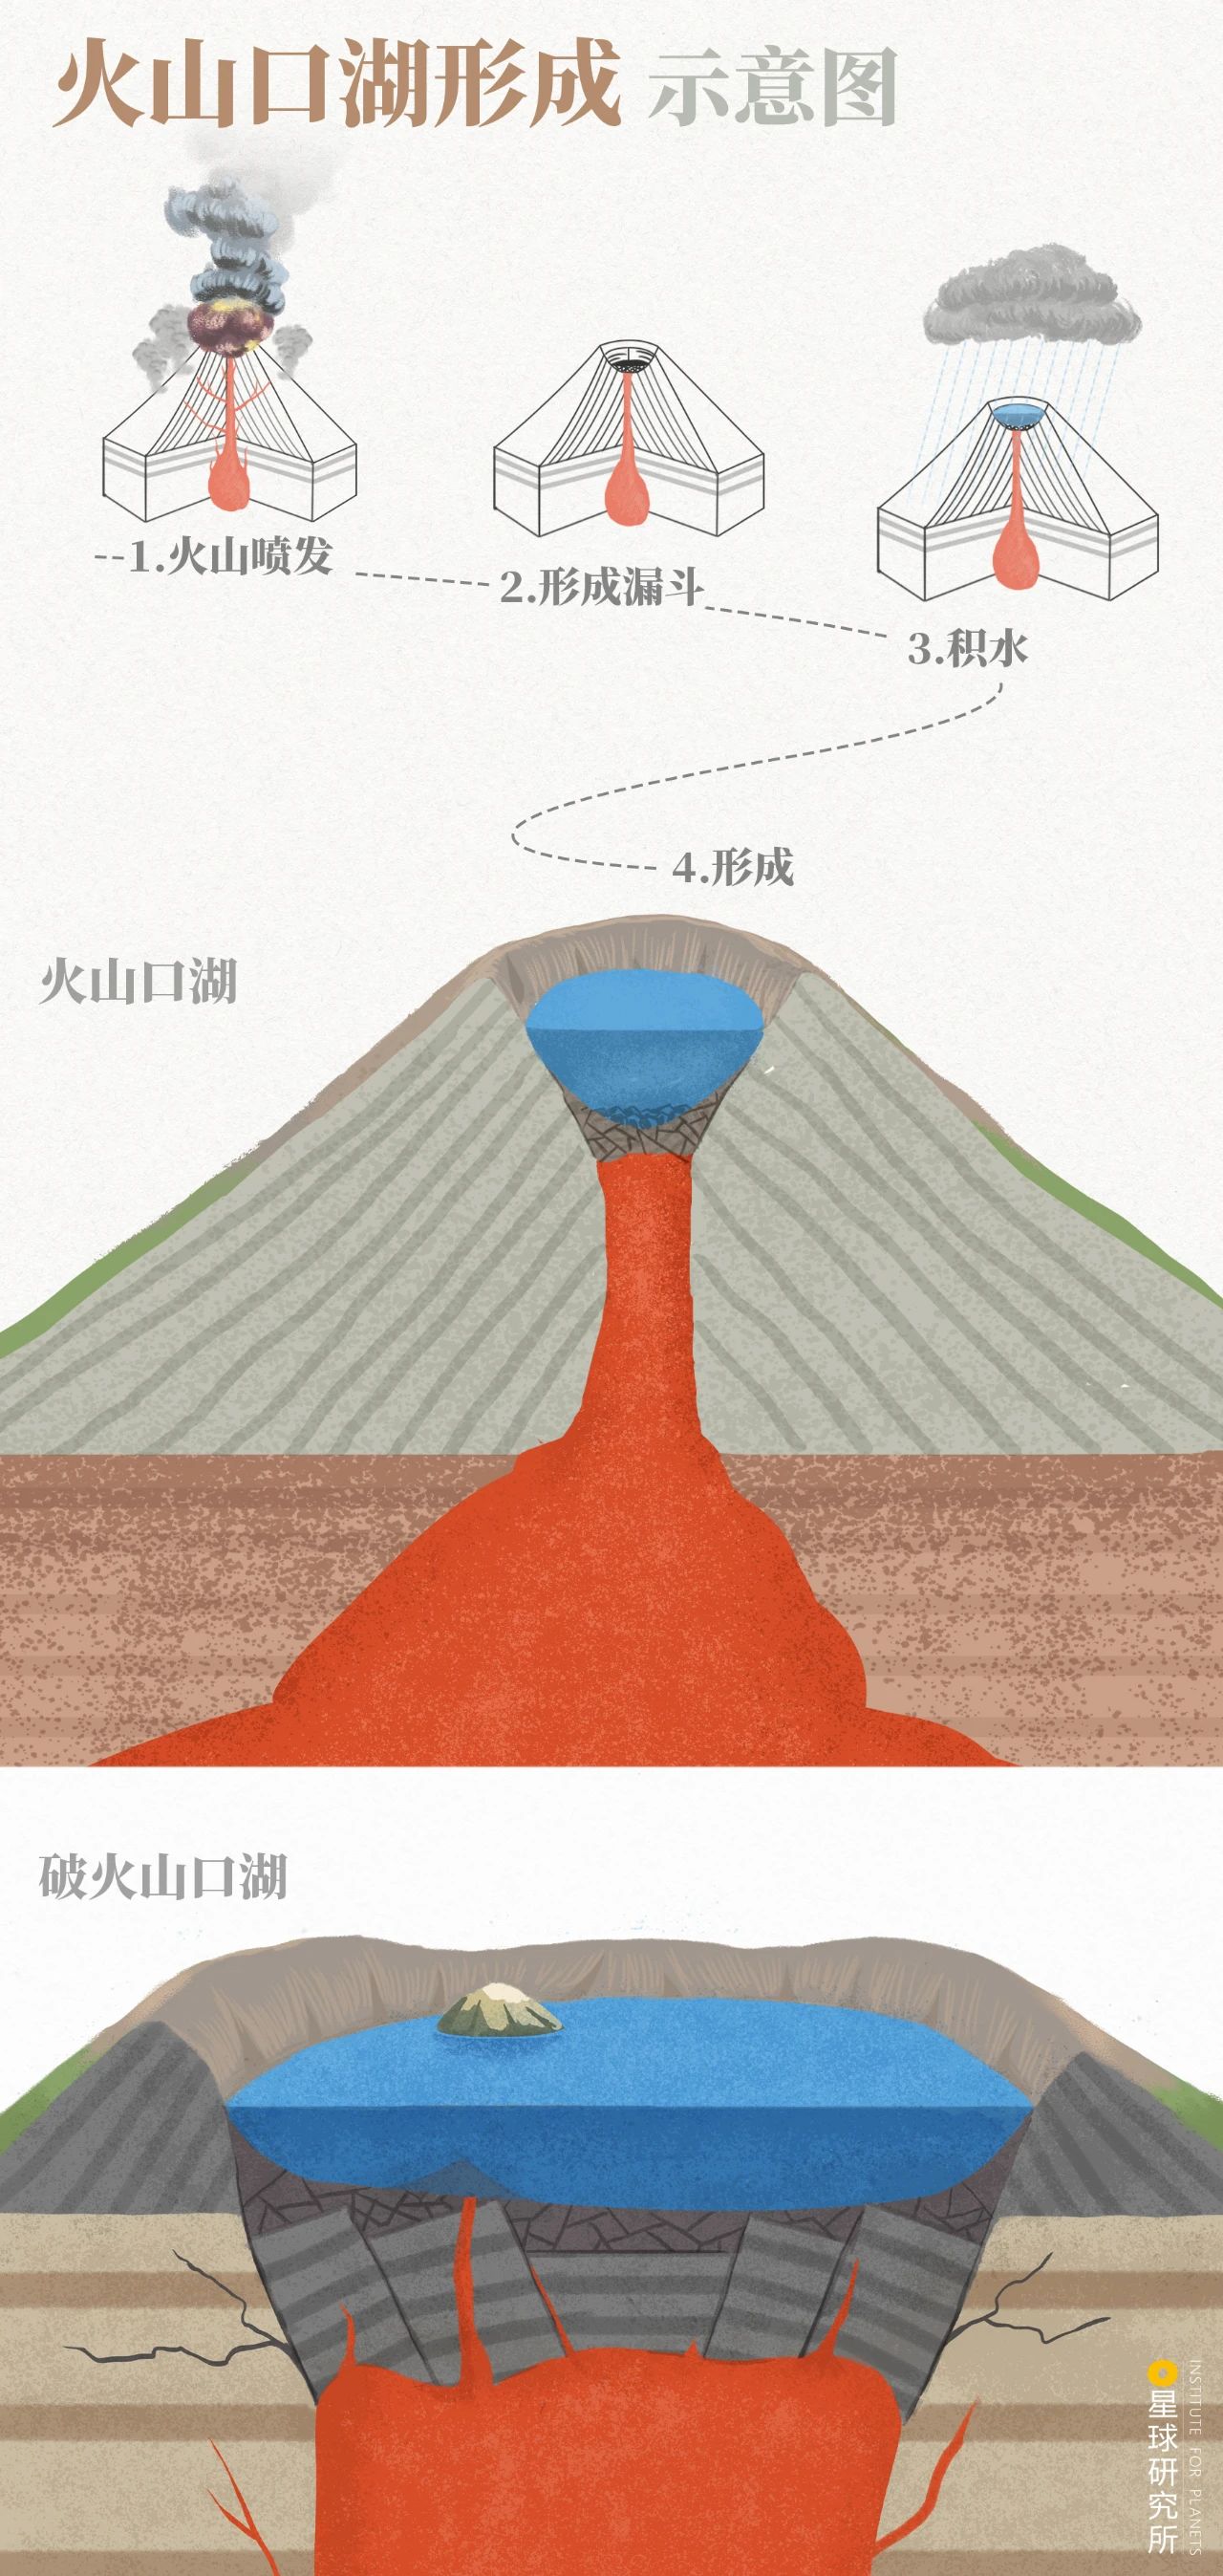 火山的形成过程图片